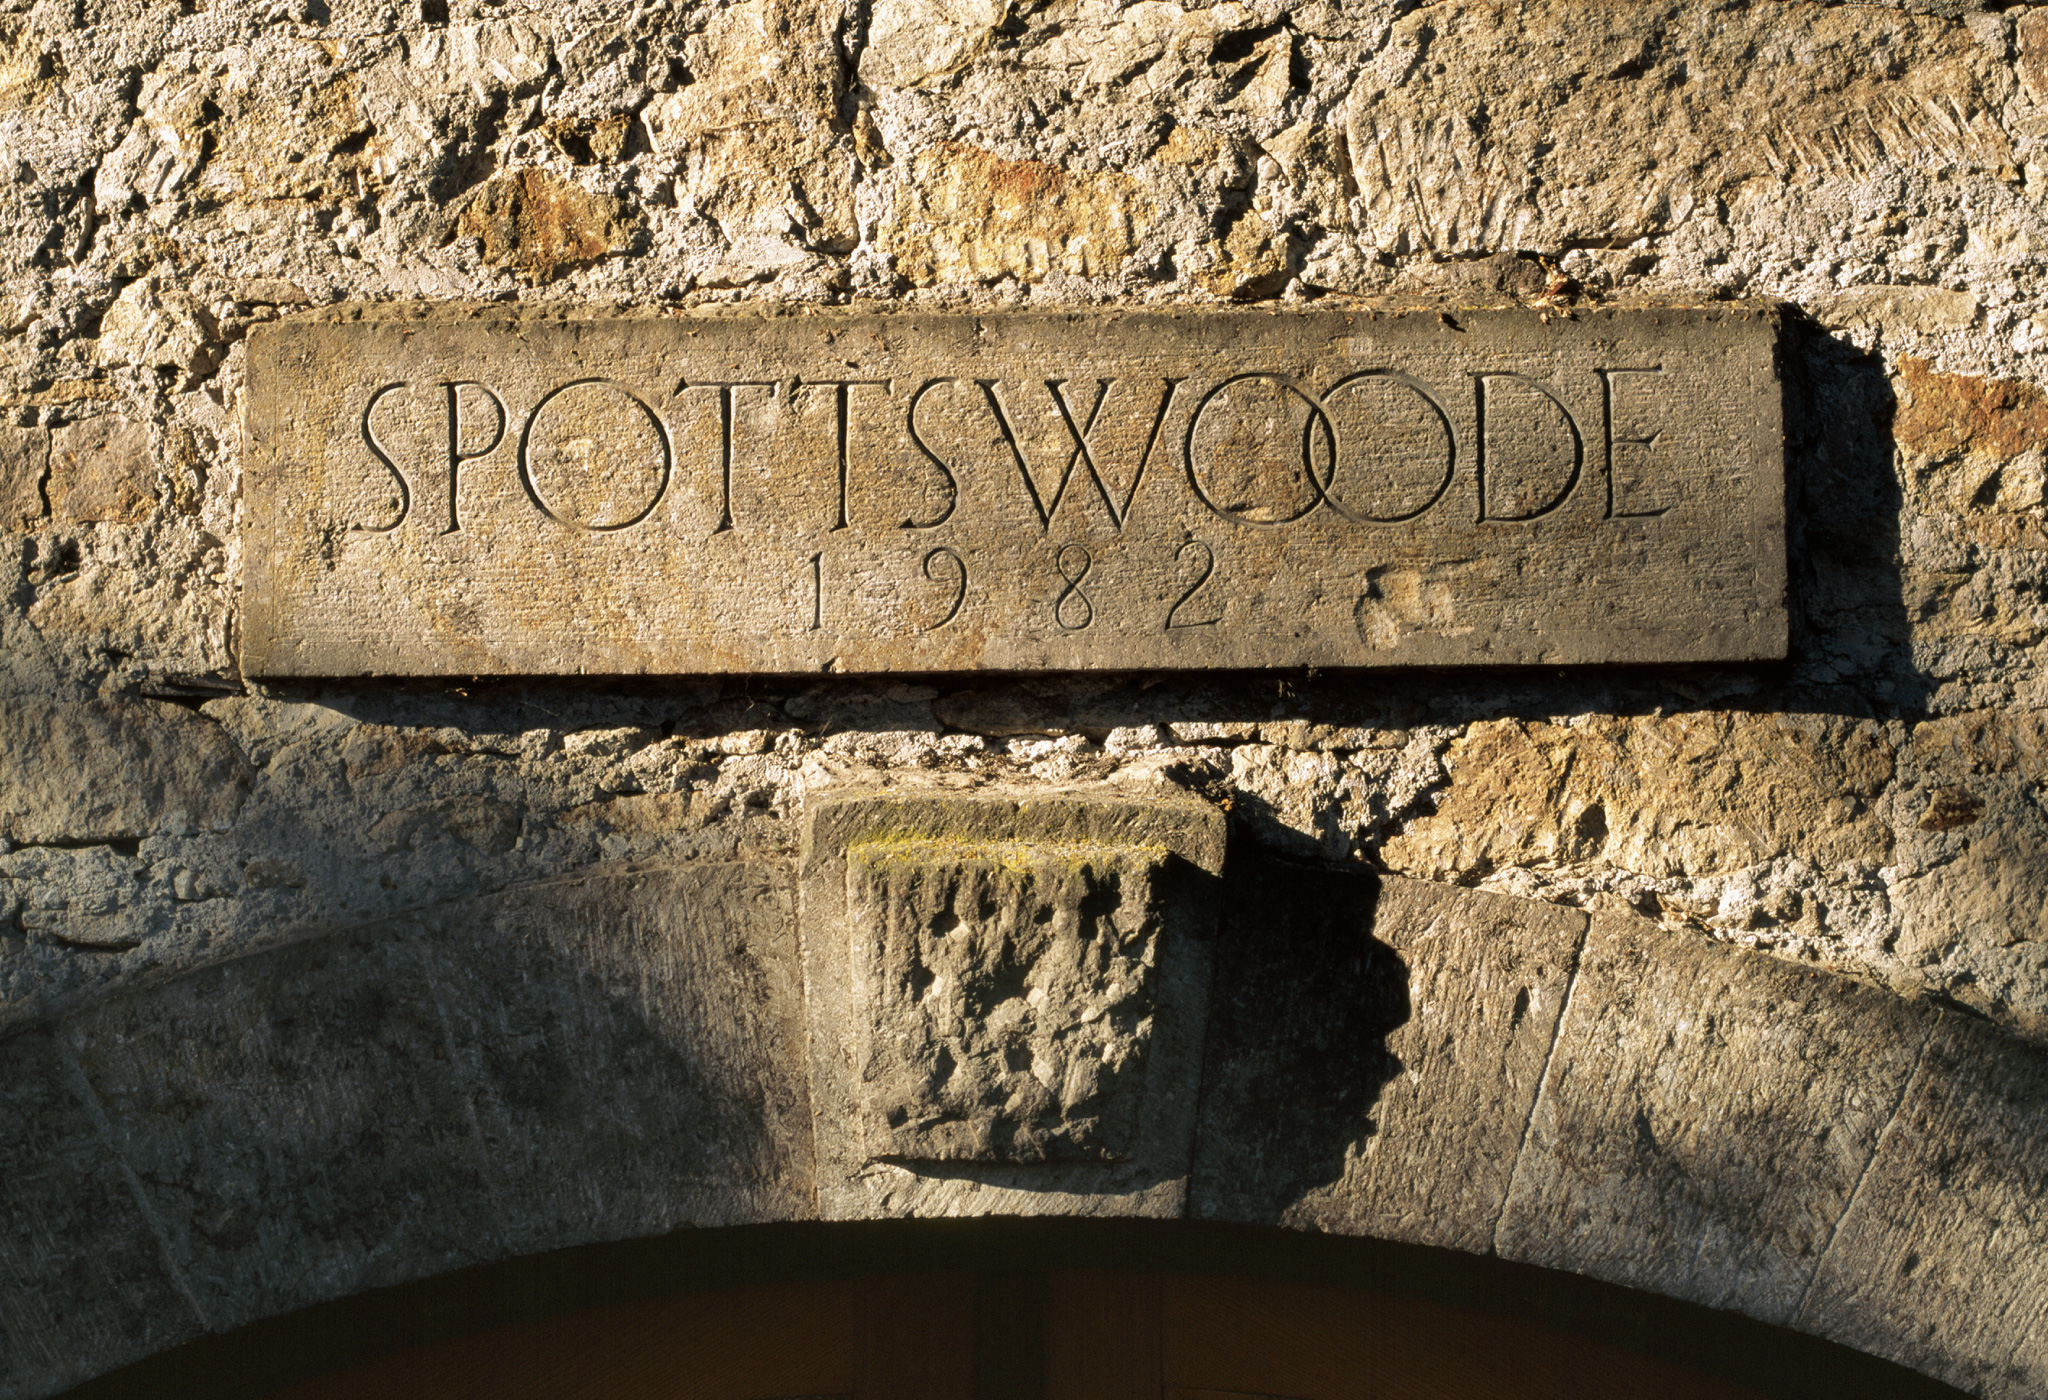 Spottswoode Stone